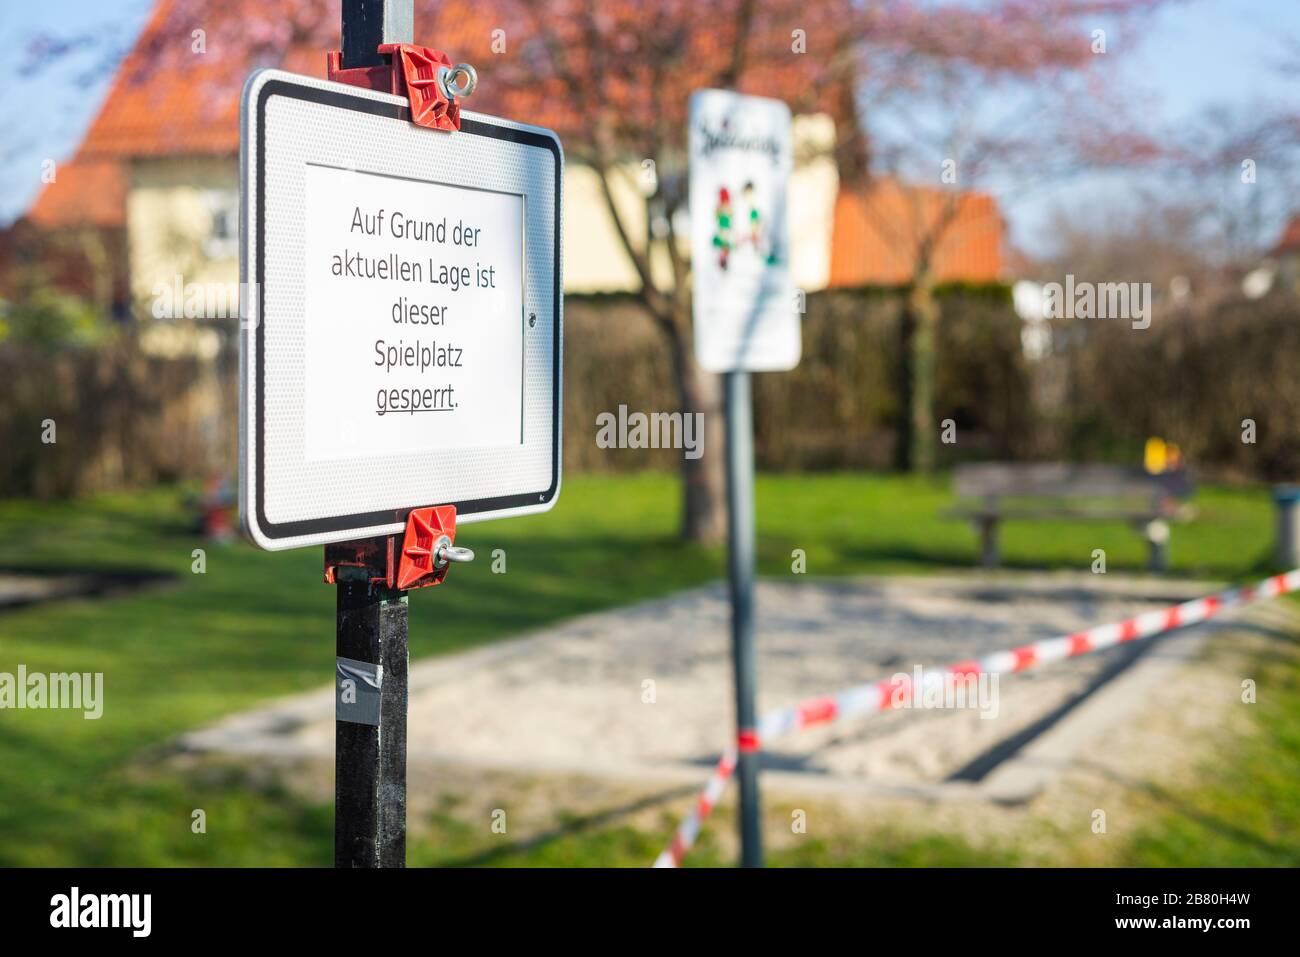 Verbotsschild und rot-weißes Absperrband an einem verschlossenen Kinderspielplatz während der Corona-Krise in Deutschland Stockfoto